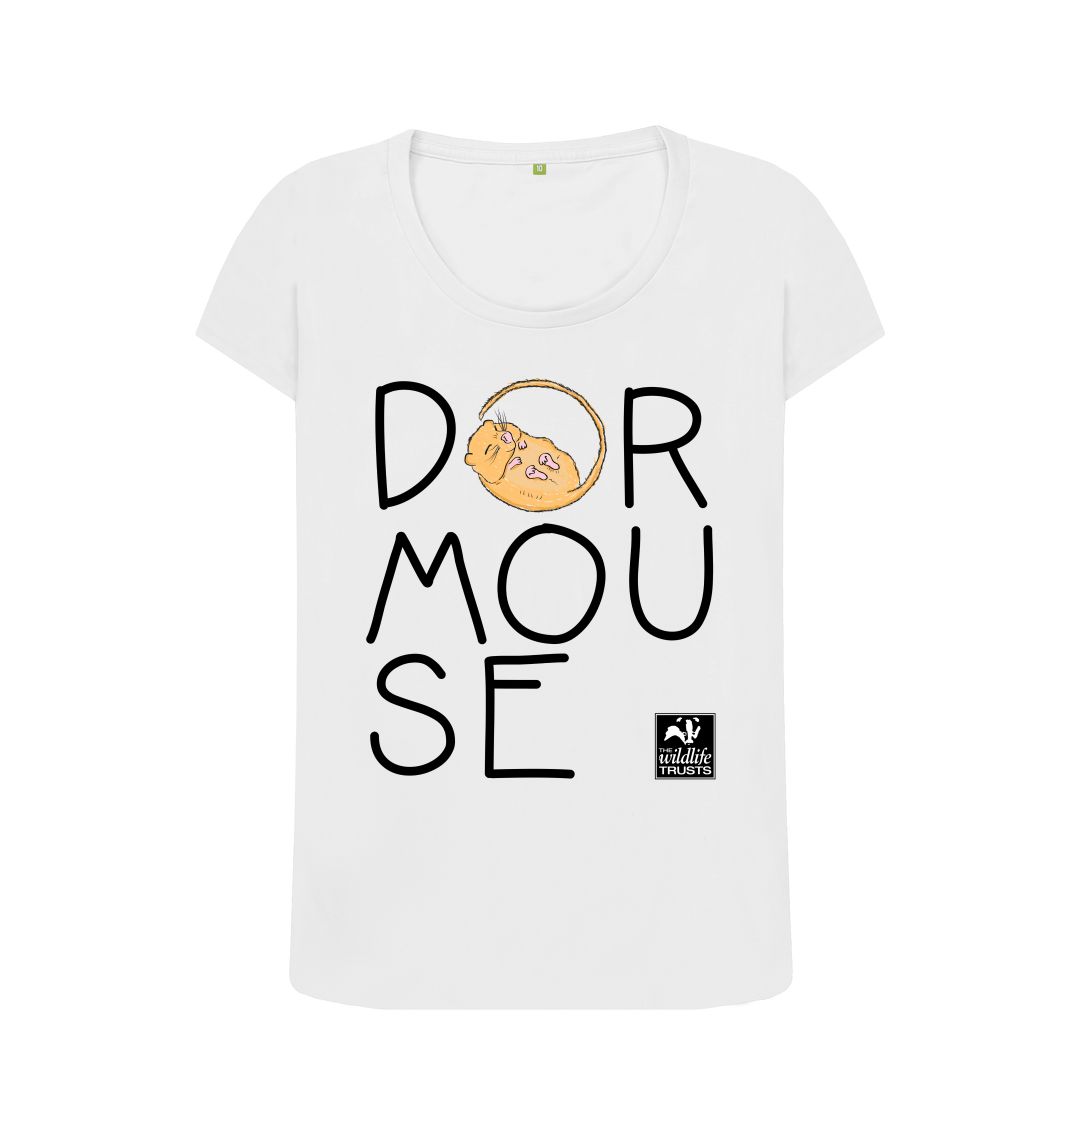 White Dormouse women's t-shirt